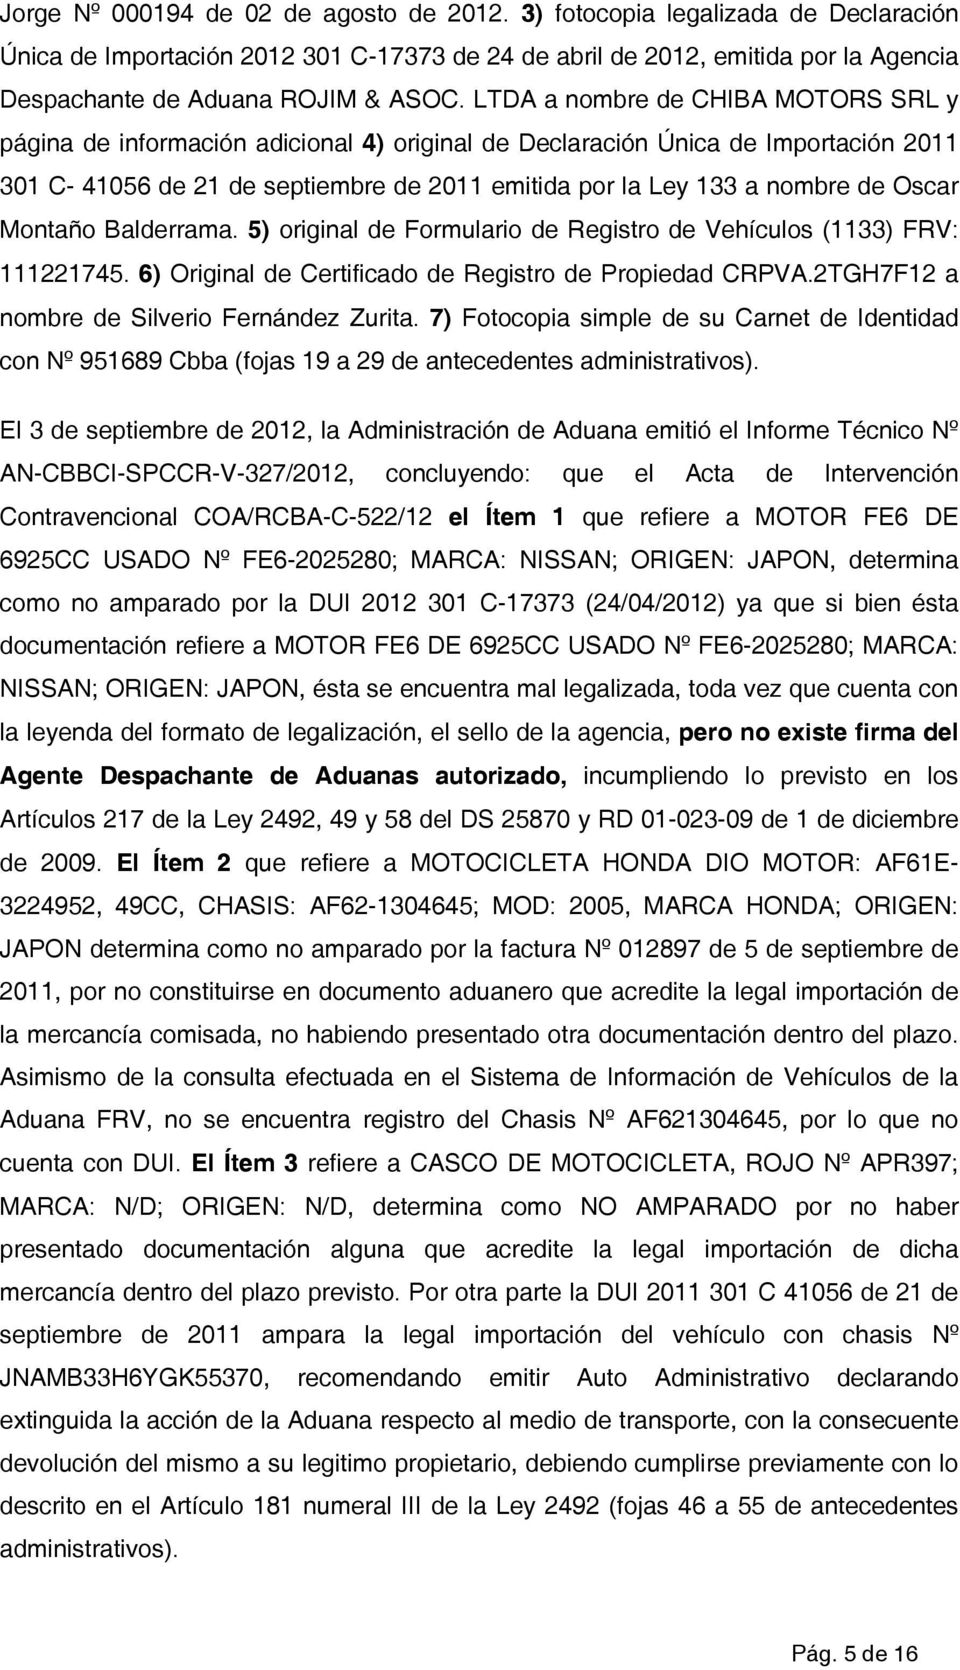 Oscar Montaño Balderrama. 5) original de Formulario de Registro de Vehículos (1133) FRV: 111221745. 6) Original de Certificado de Registro de Propiedad CRPVA.